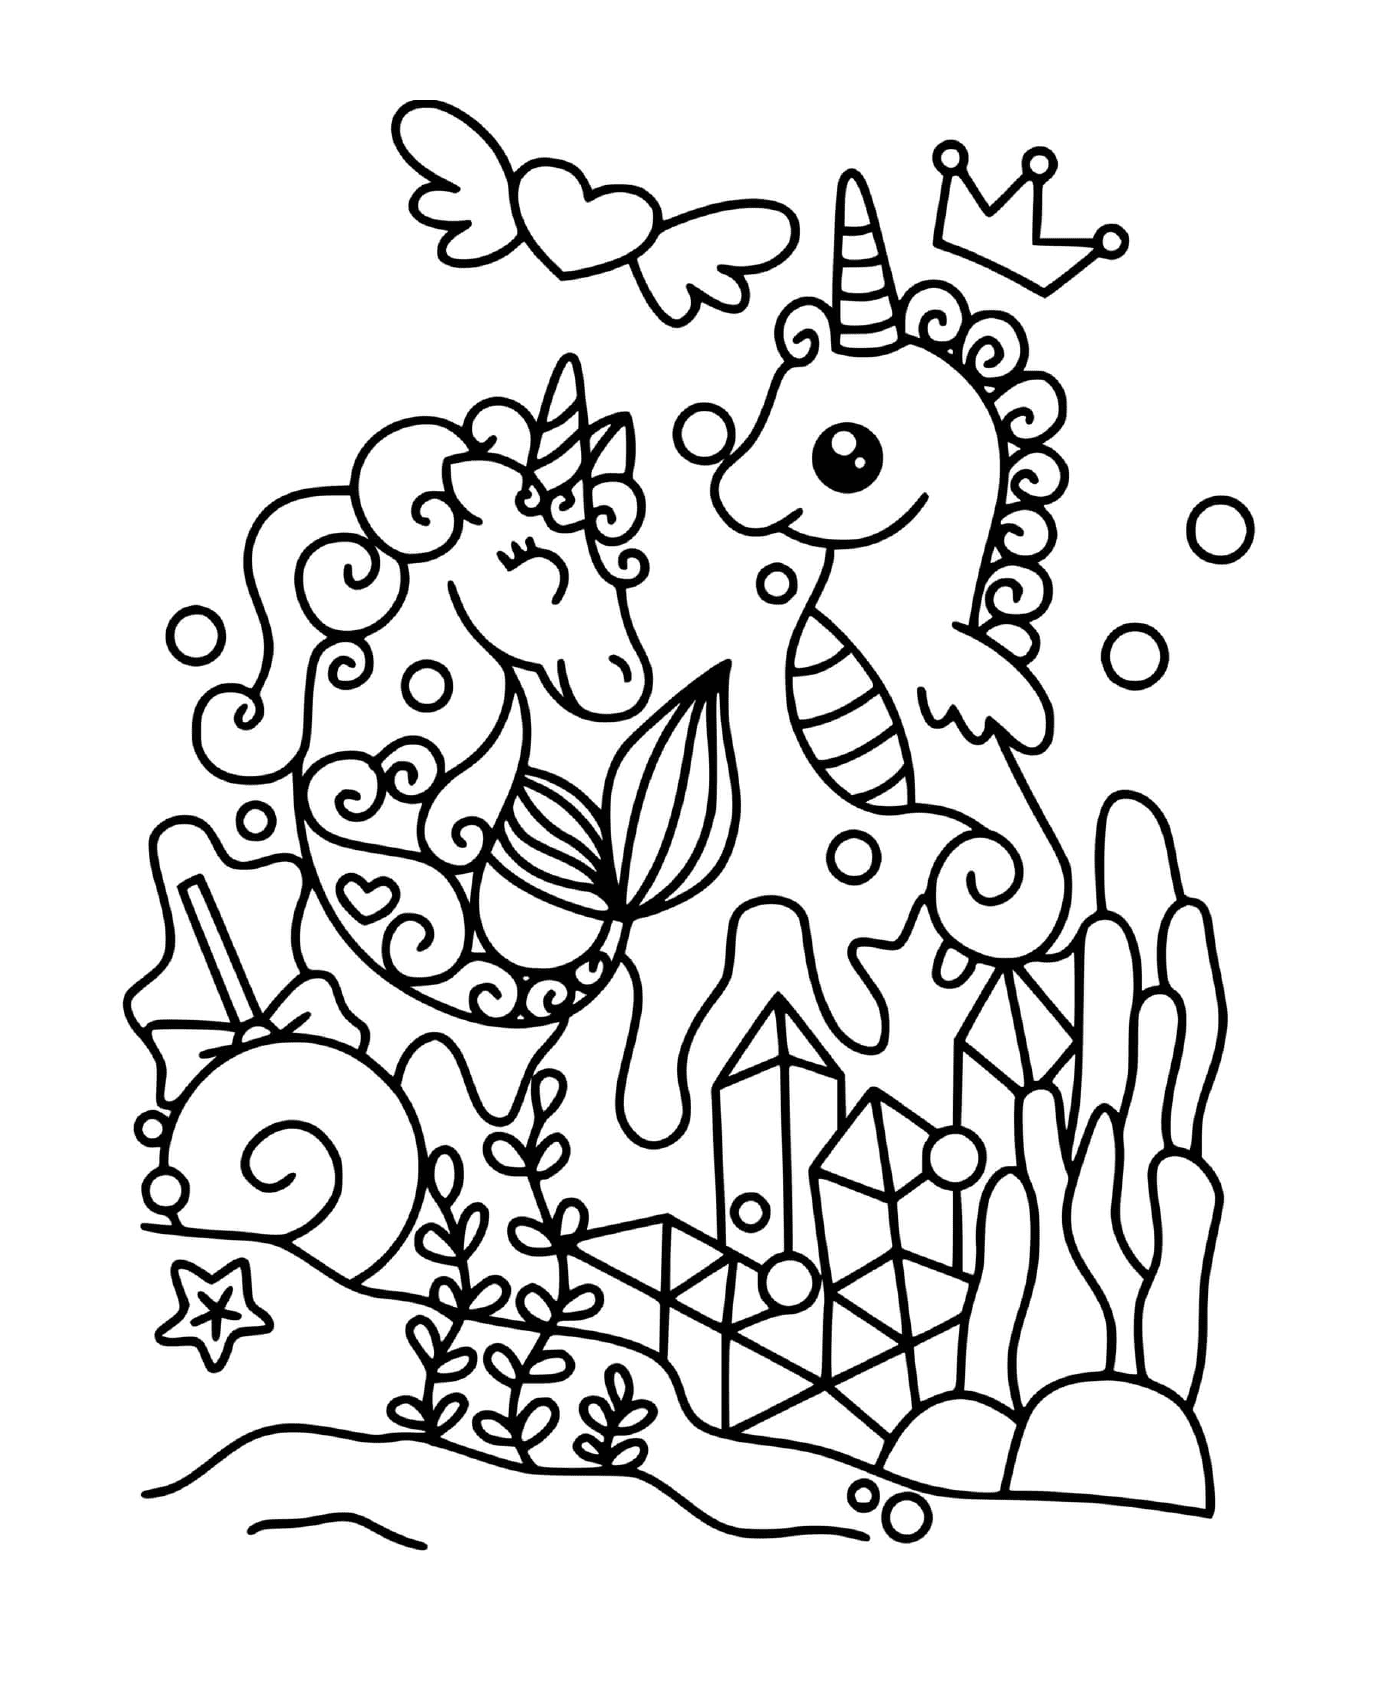  Unicorn and magical seahorse 